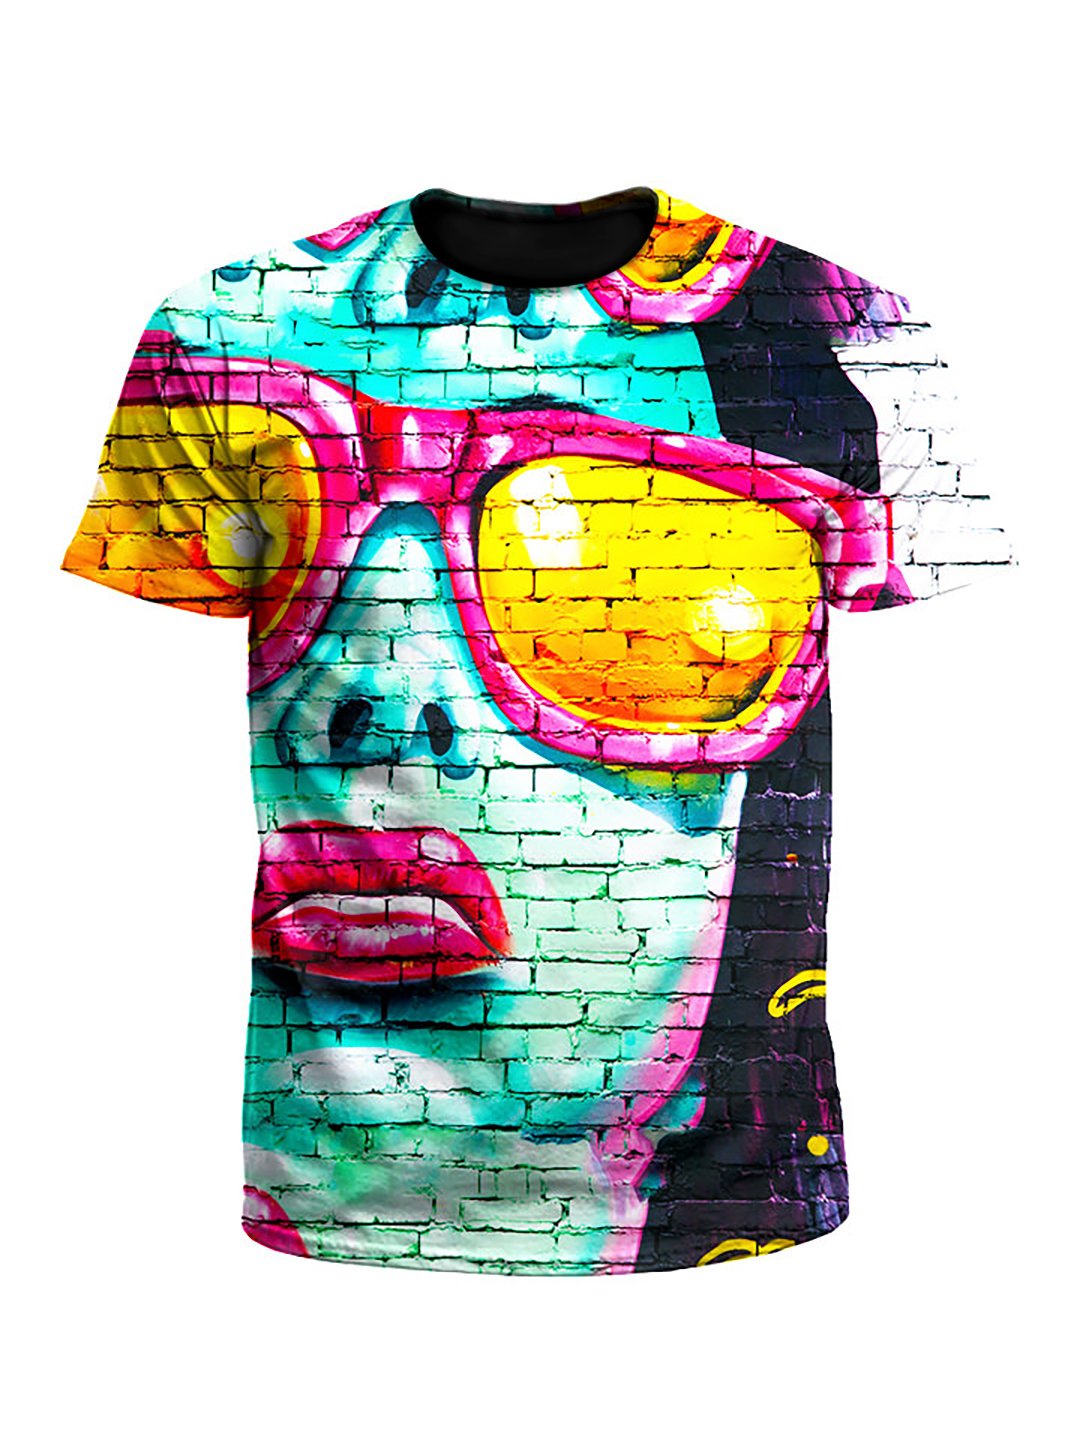 Mod Graffiti Street Art Unisex T-Shirt - Boogie Threads